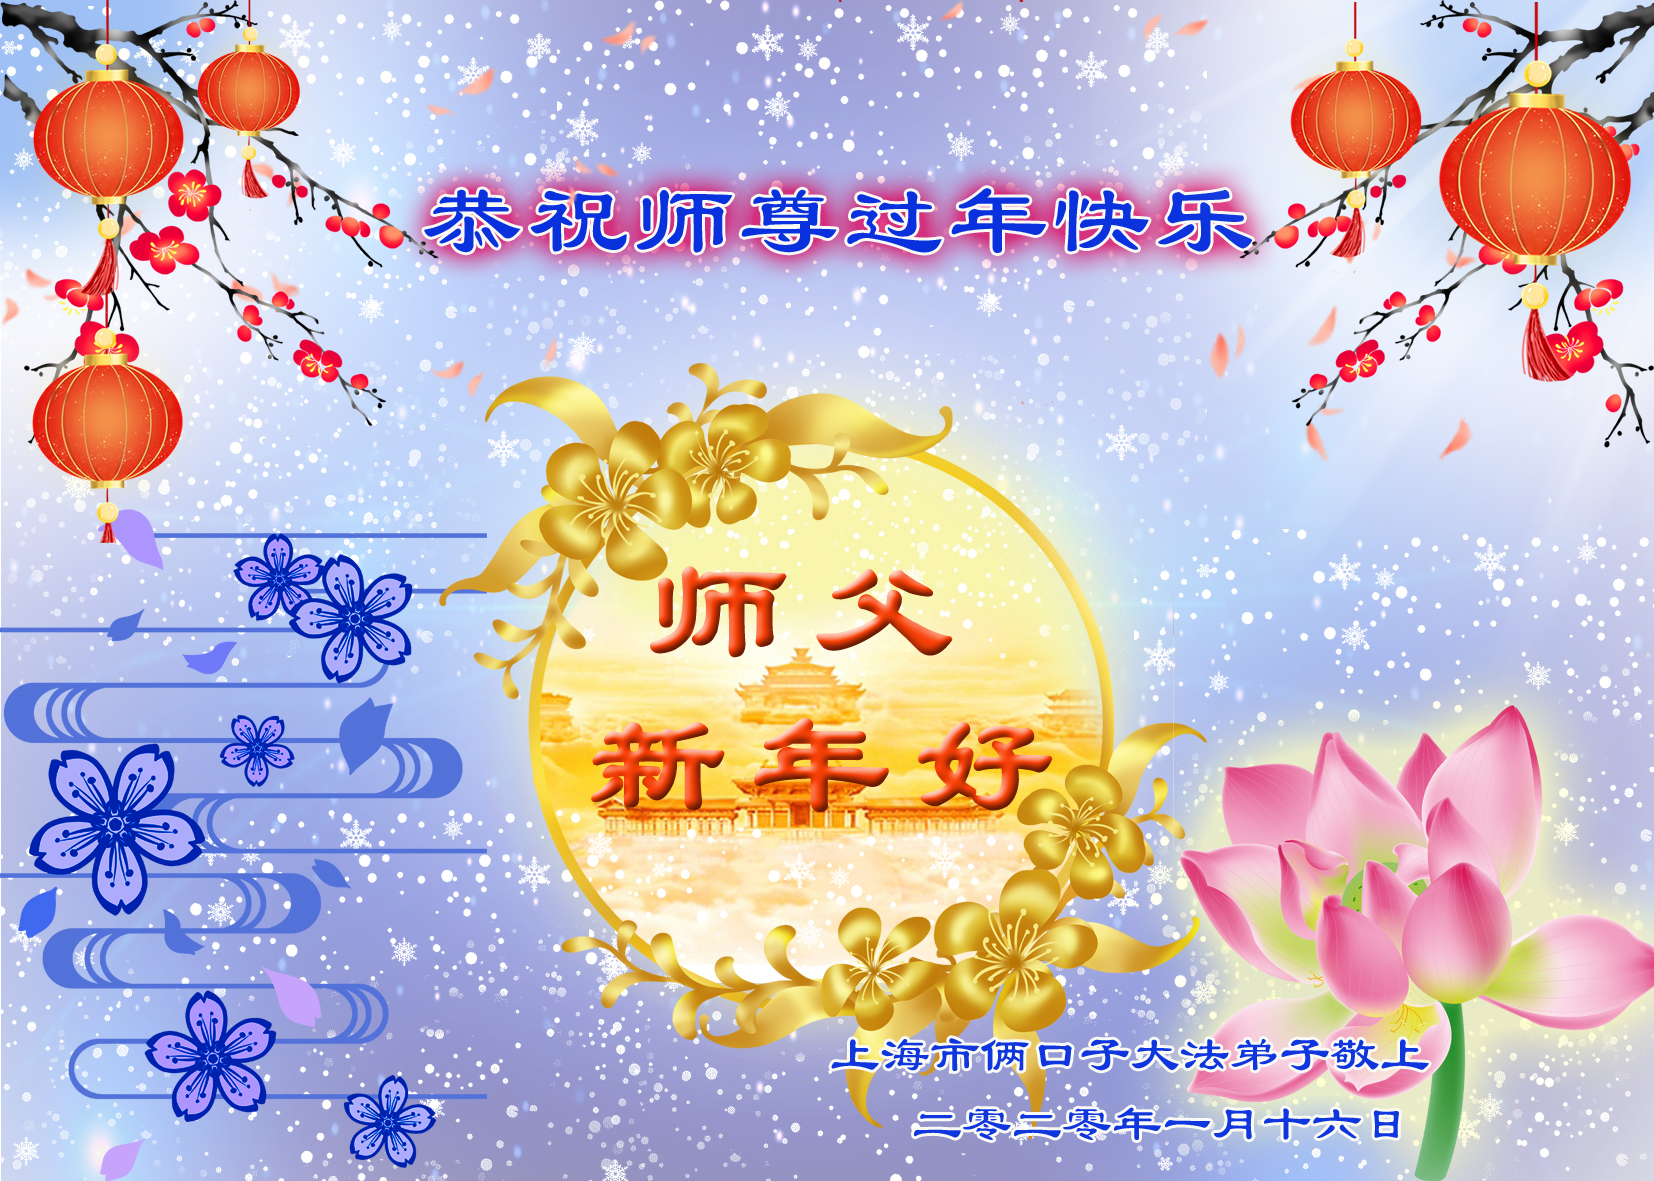 Image for article Collection de cartes de vœux 2020 (I) : Souhaiter un bon Nouvel An chinois au Maître